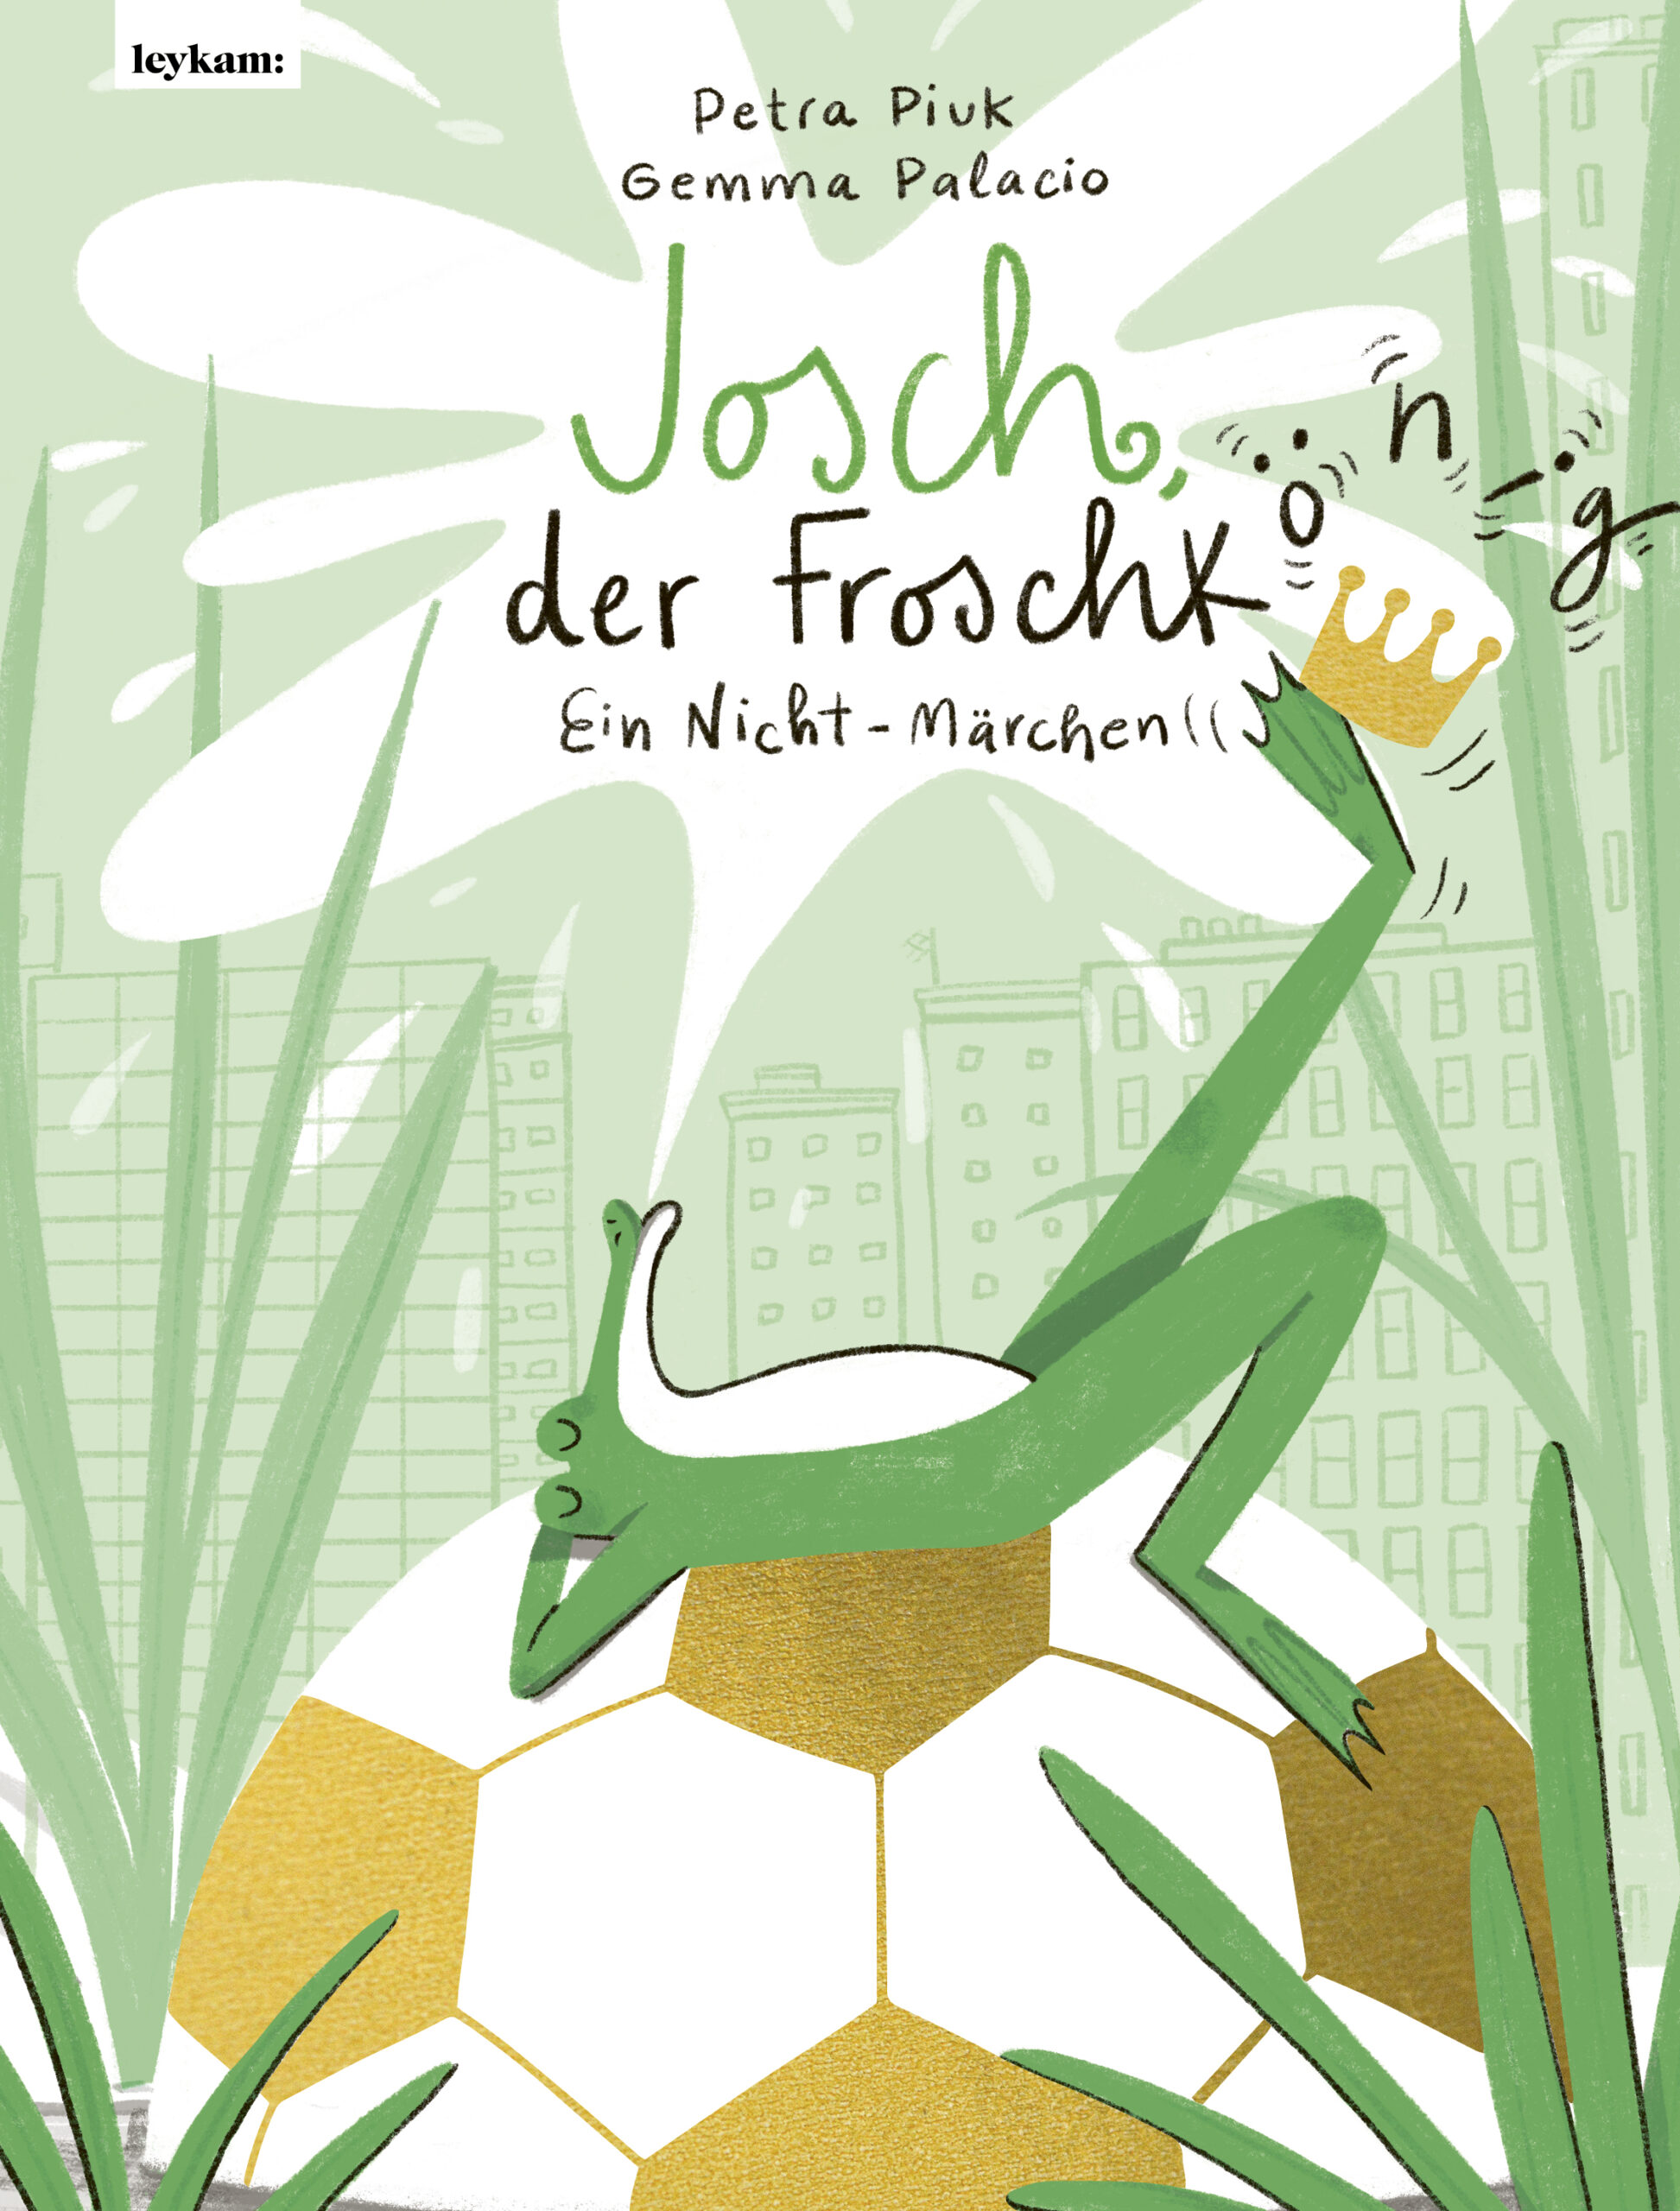 Josch der Frosch(könig)